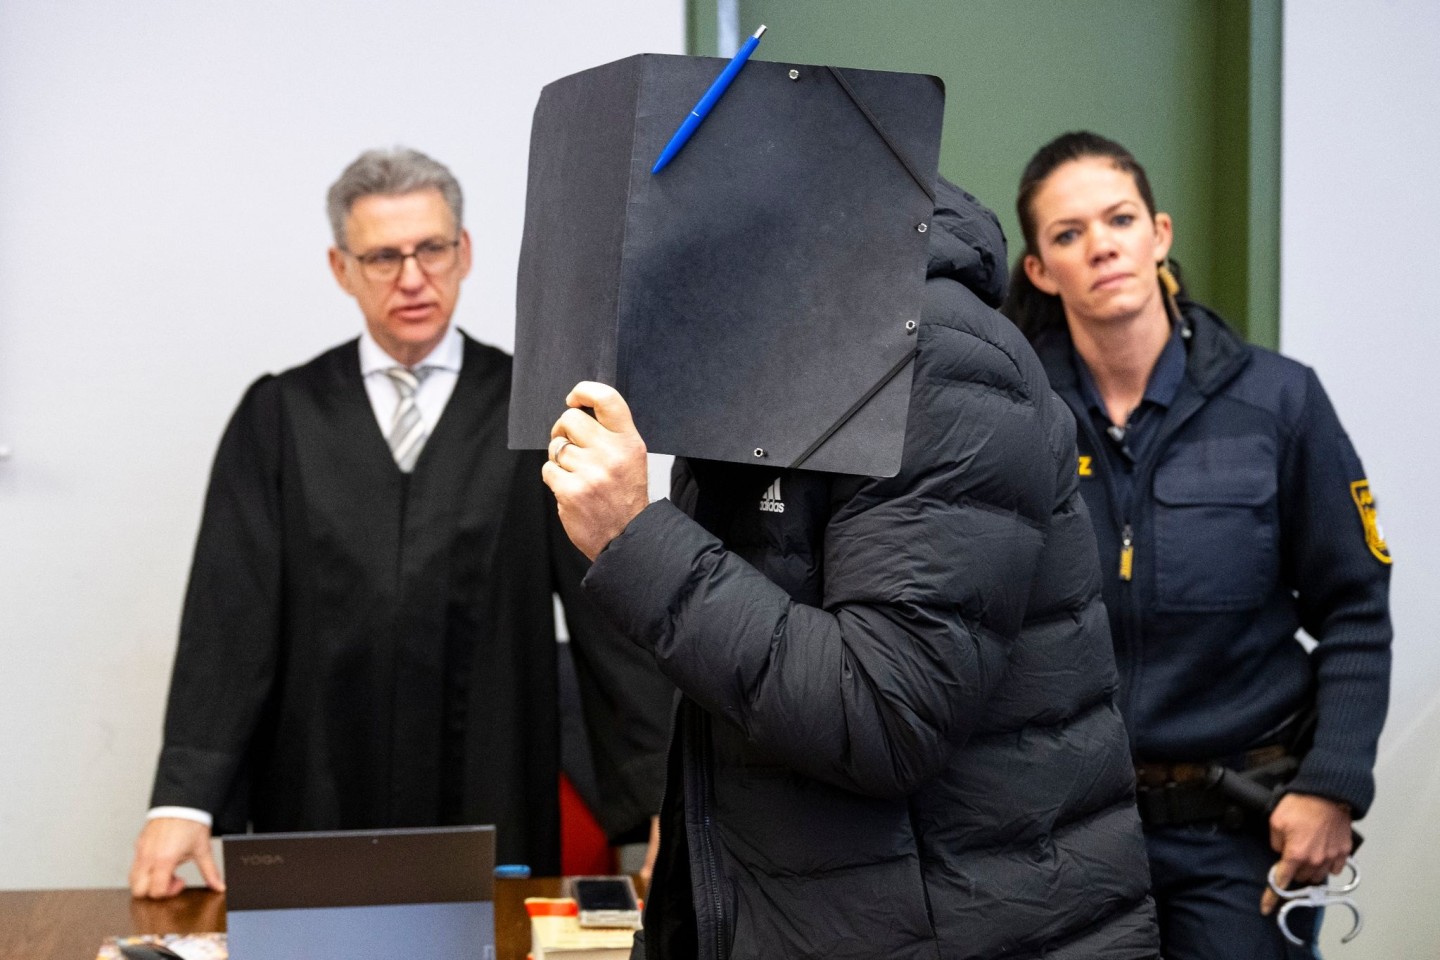 Der angeklagte Fußballtrainer hat vor Gericht in München hundertfachen Missbrauch zugegeben.